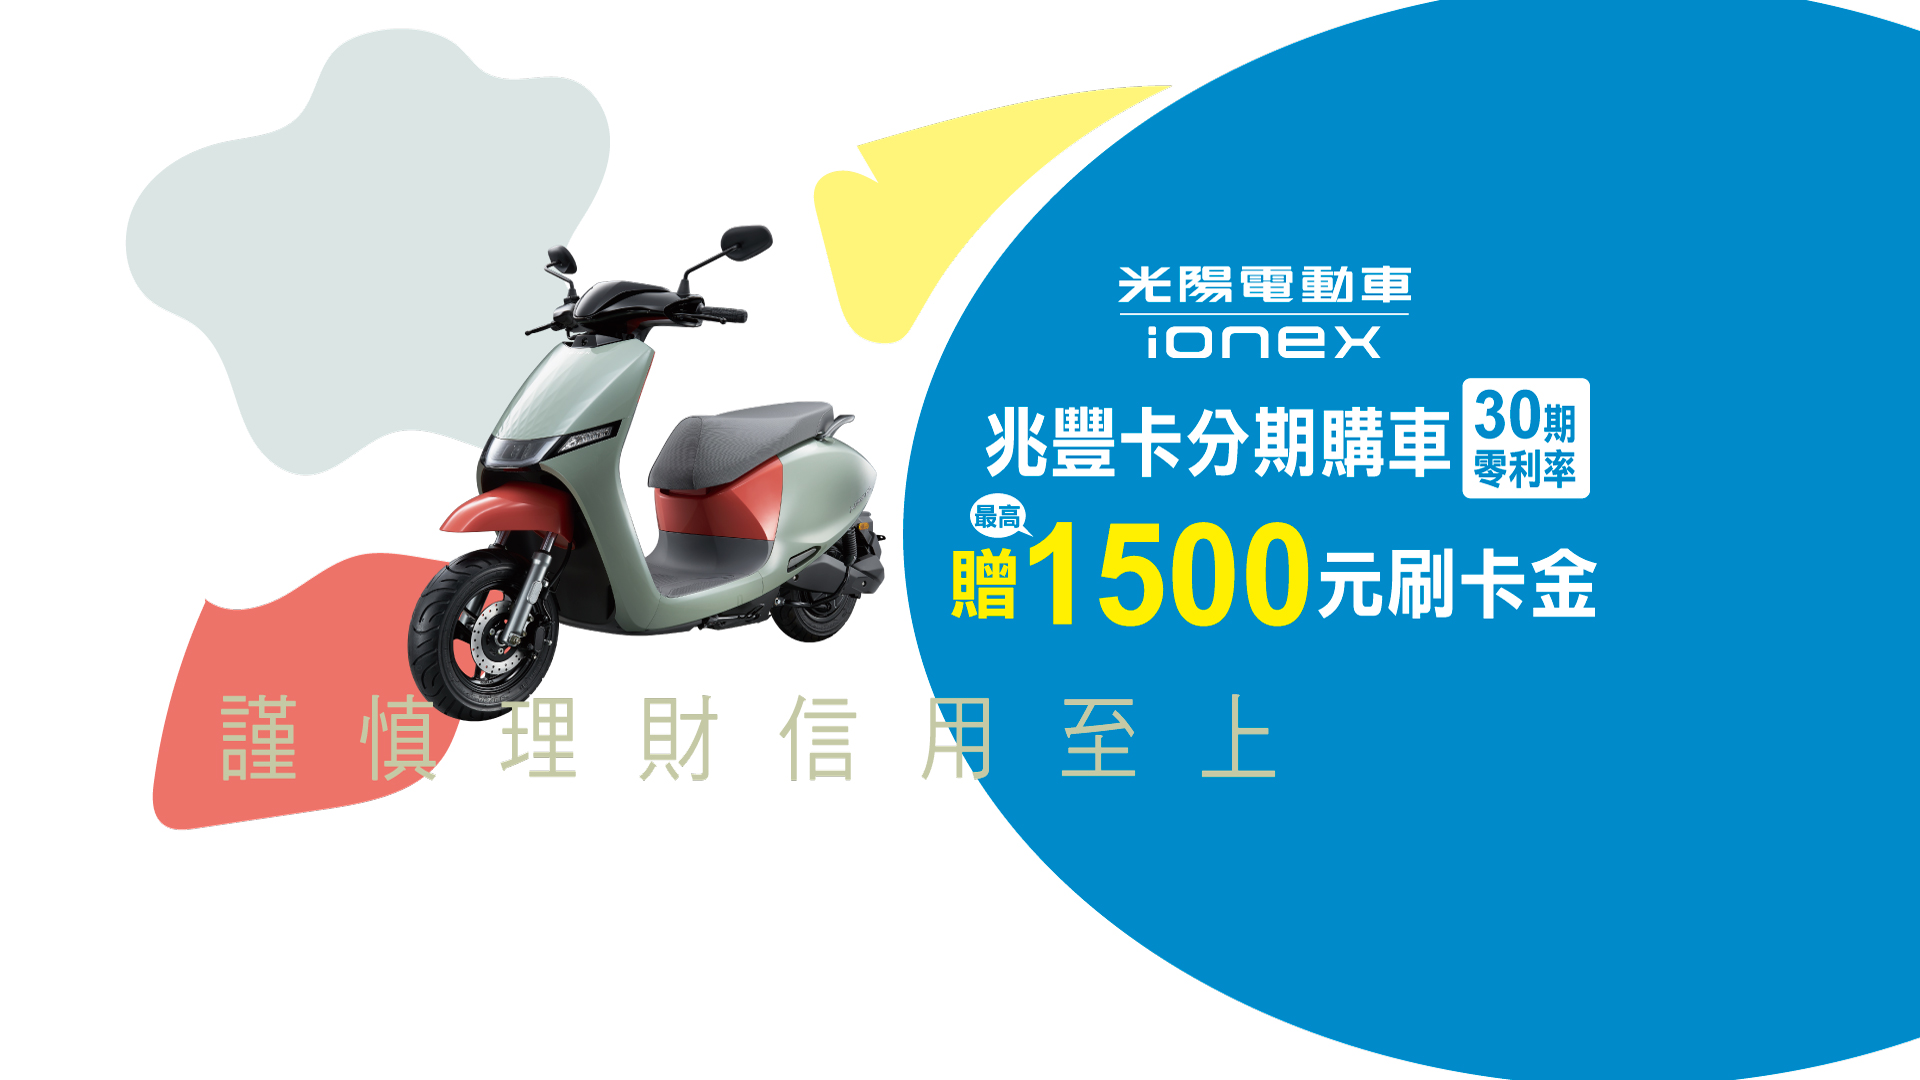 Ionex光陽電動車 兆豐卡分期購車30期零利率 最高贈1500元刷卡金(banner)